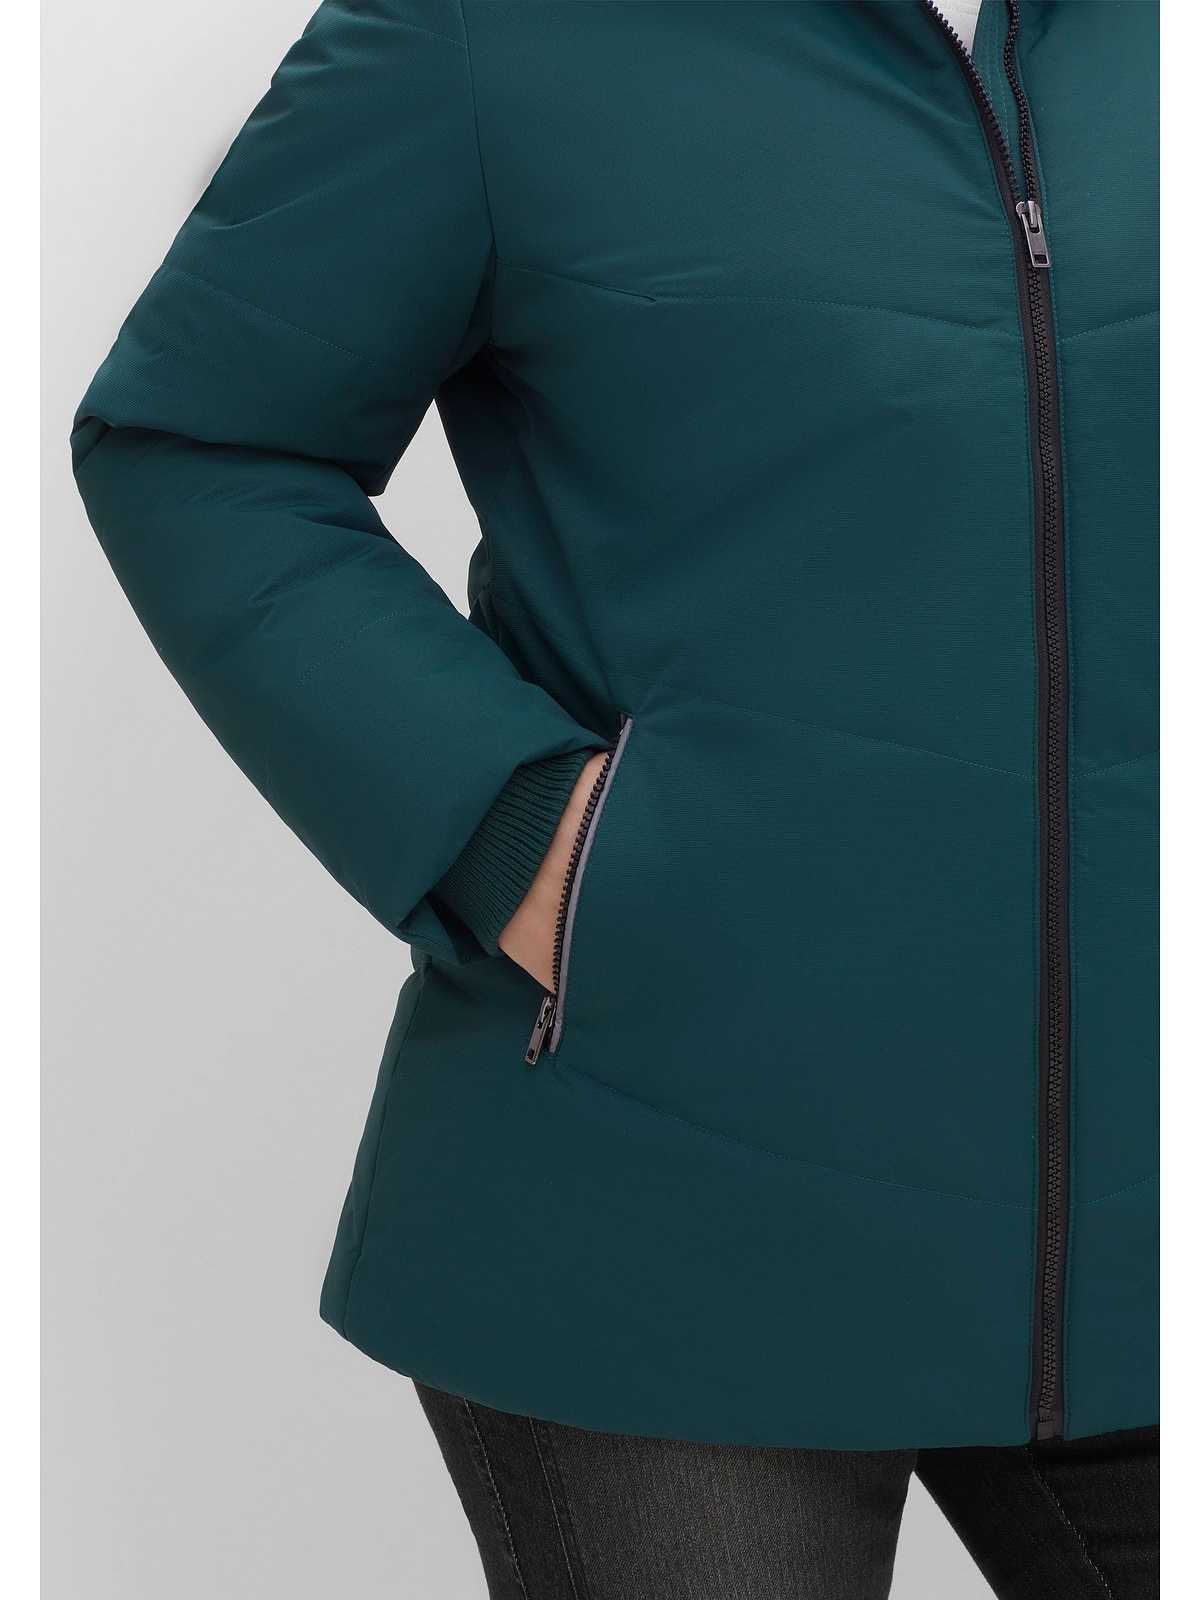 Sheego Outdoorjacke »Große Größen«, ohne Kapuze, mit Stehkragen, leicht strukturiertes Material